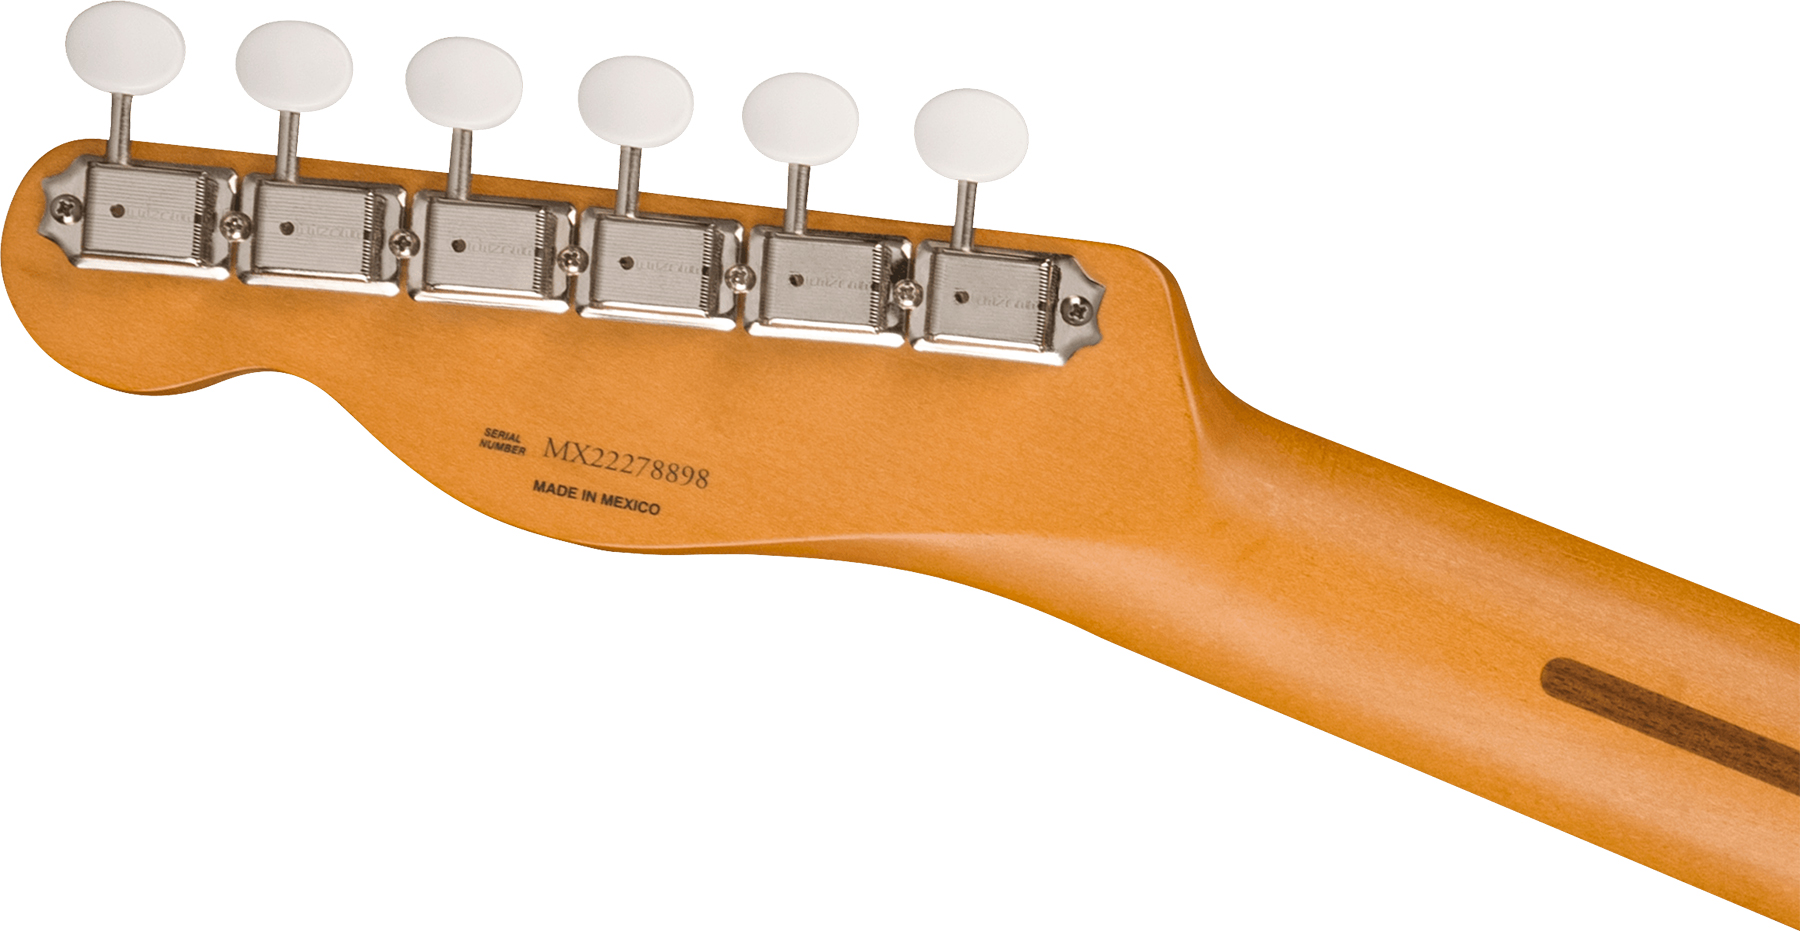 Fender Tele Gold Foil Ltd Mex 2mh Ht Eb - Candy Apple Burst - Guitarra eléctrica con forma de tel - Variation 3